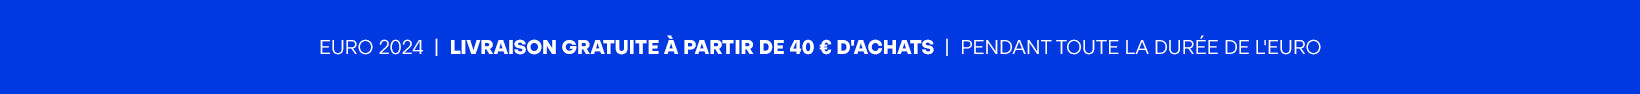 ENVÍOS GRATIS 40€ EURO 2024 FR